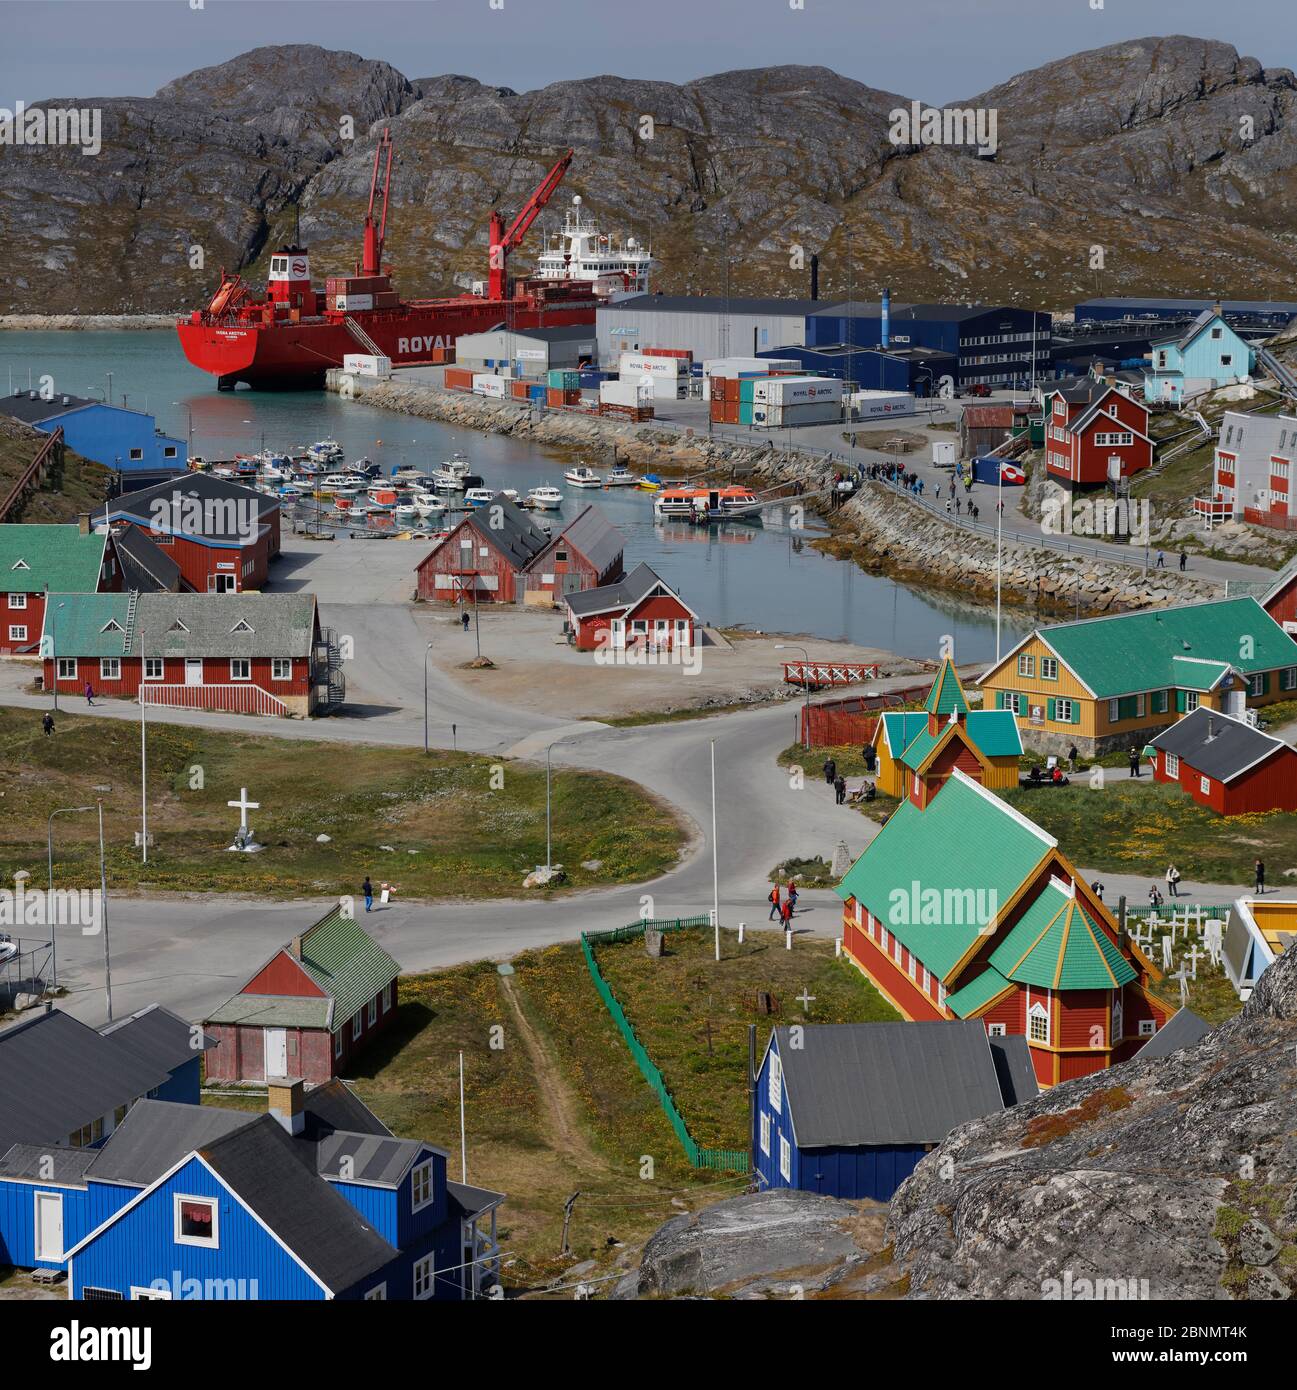 Paamiut Stadt an der grönländischen Küste, mit Royal Arctic Line Boot festgemacht, Grönland, Juli 2016. Stockfoto